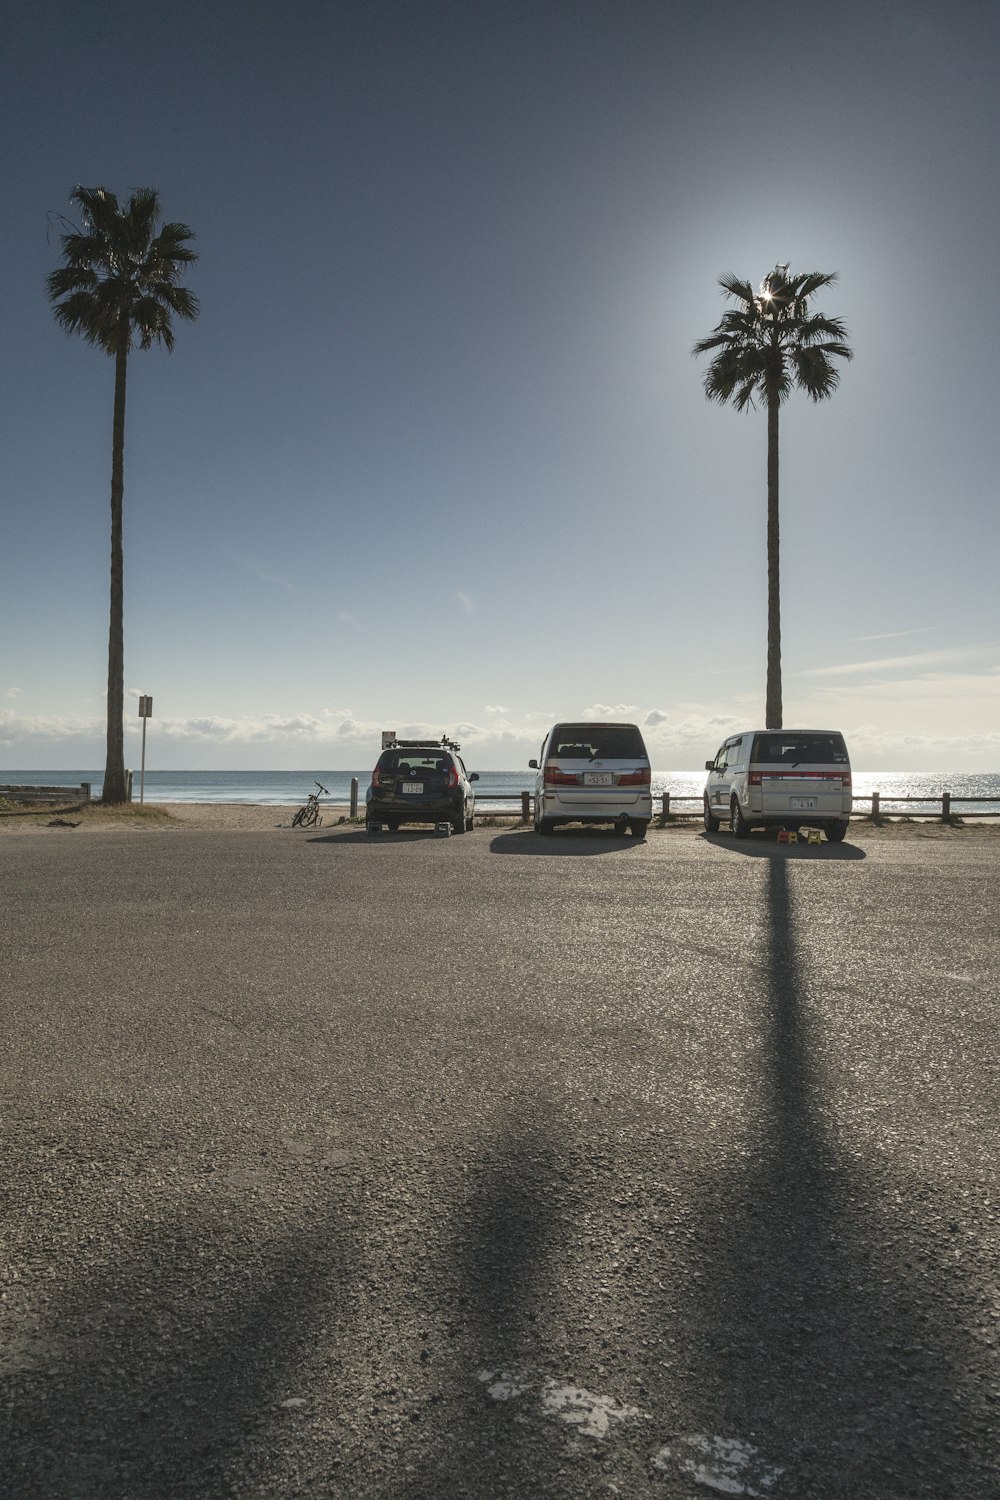 Drei Vans parken auf einem Parkplatz neben Palmen